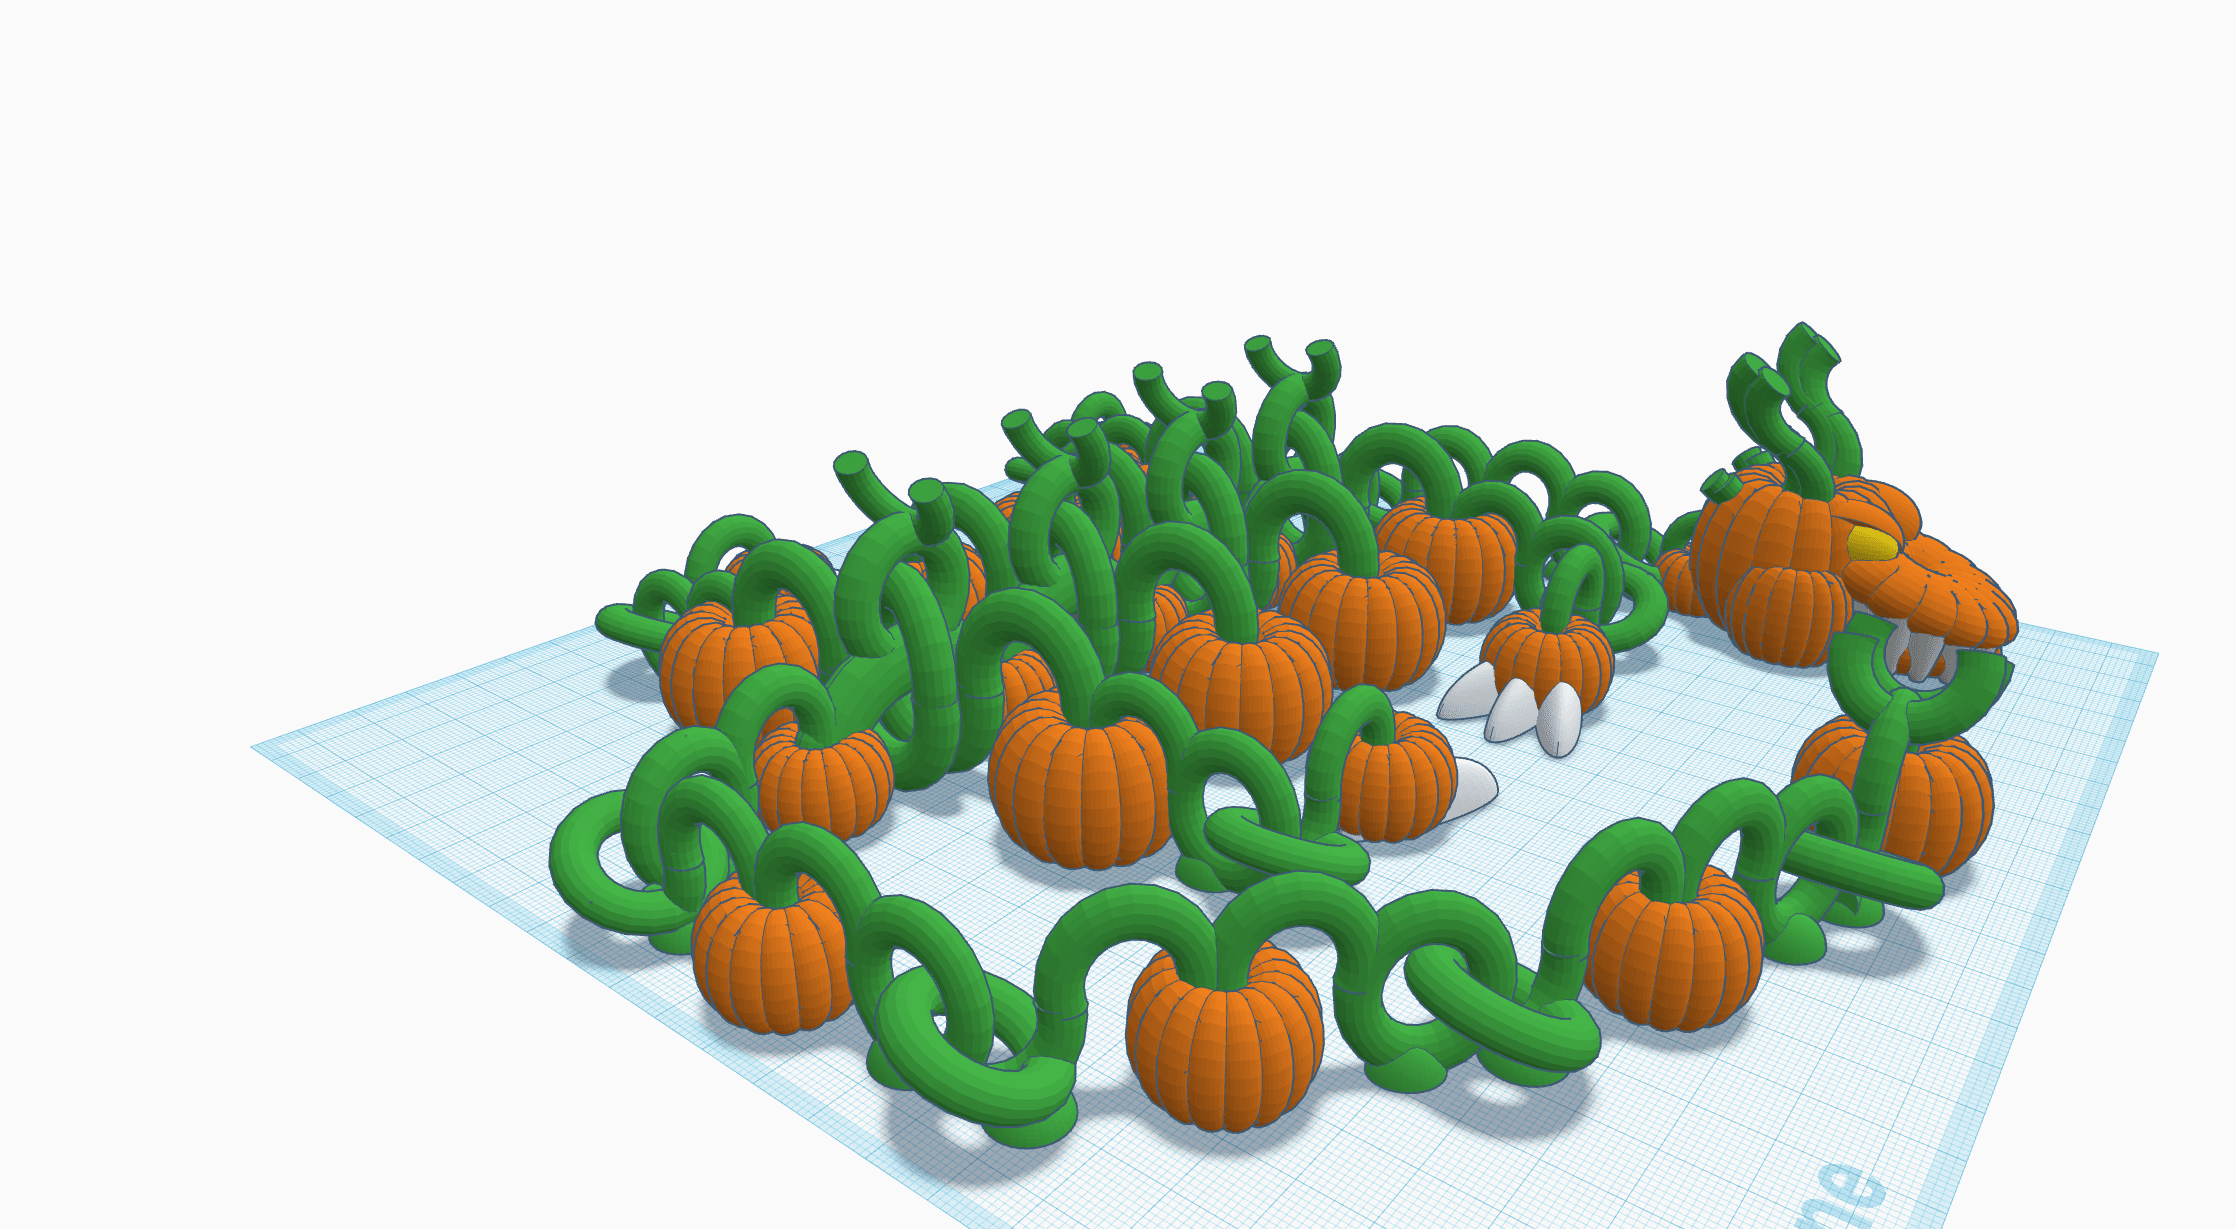 Shakaworld3d Pumpkin Patch Dragon Challenge Release V1.stl 3d model